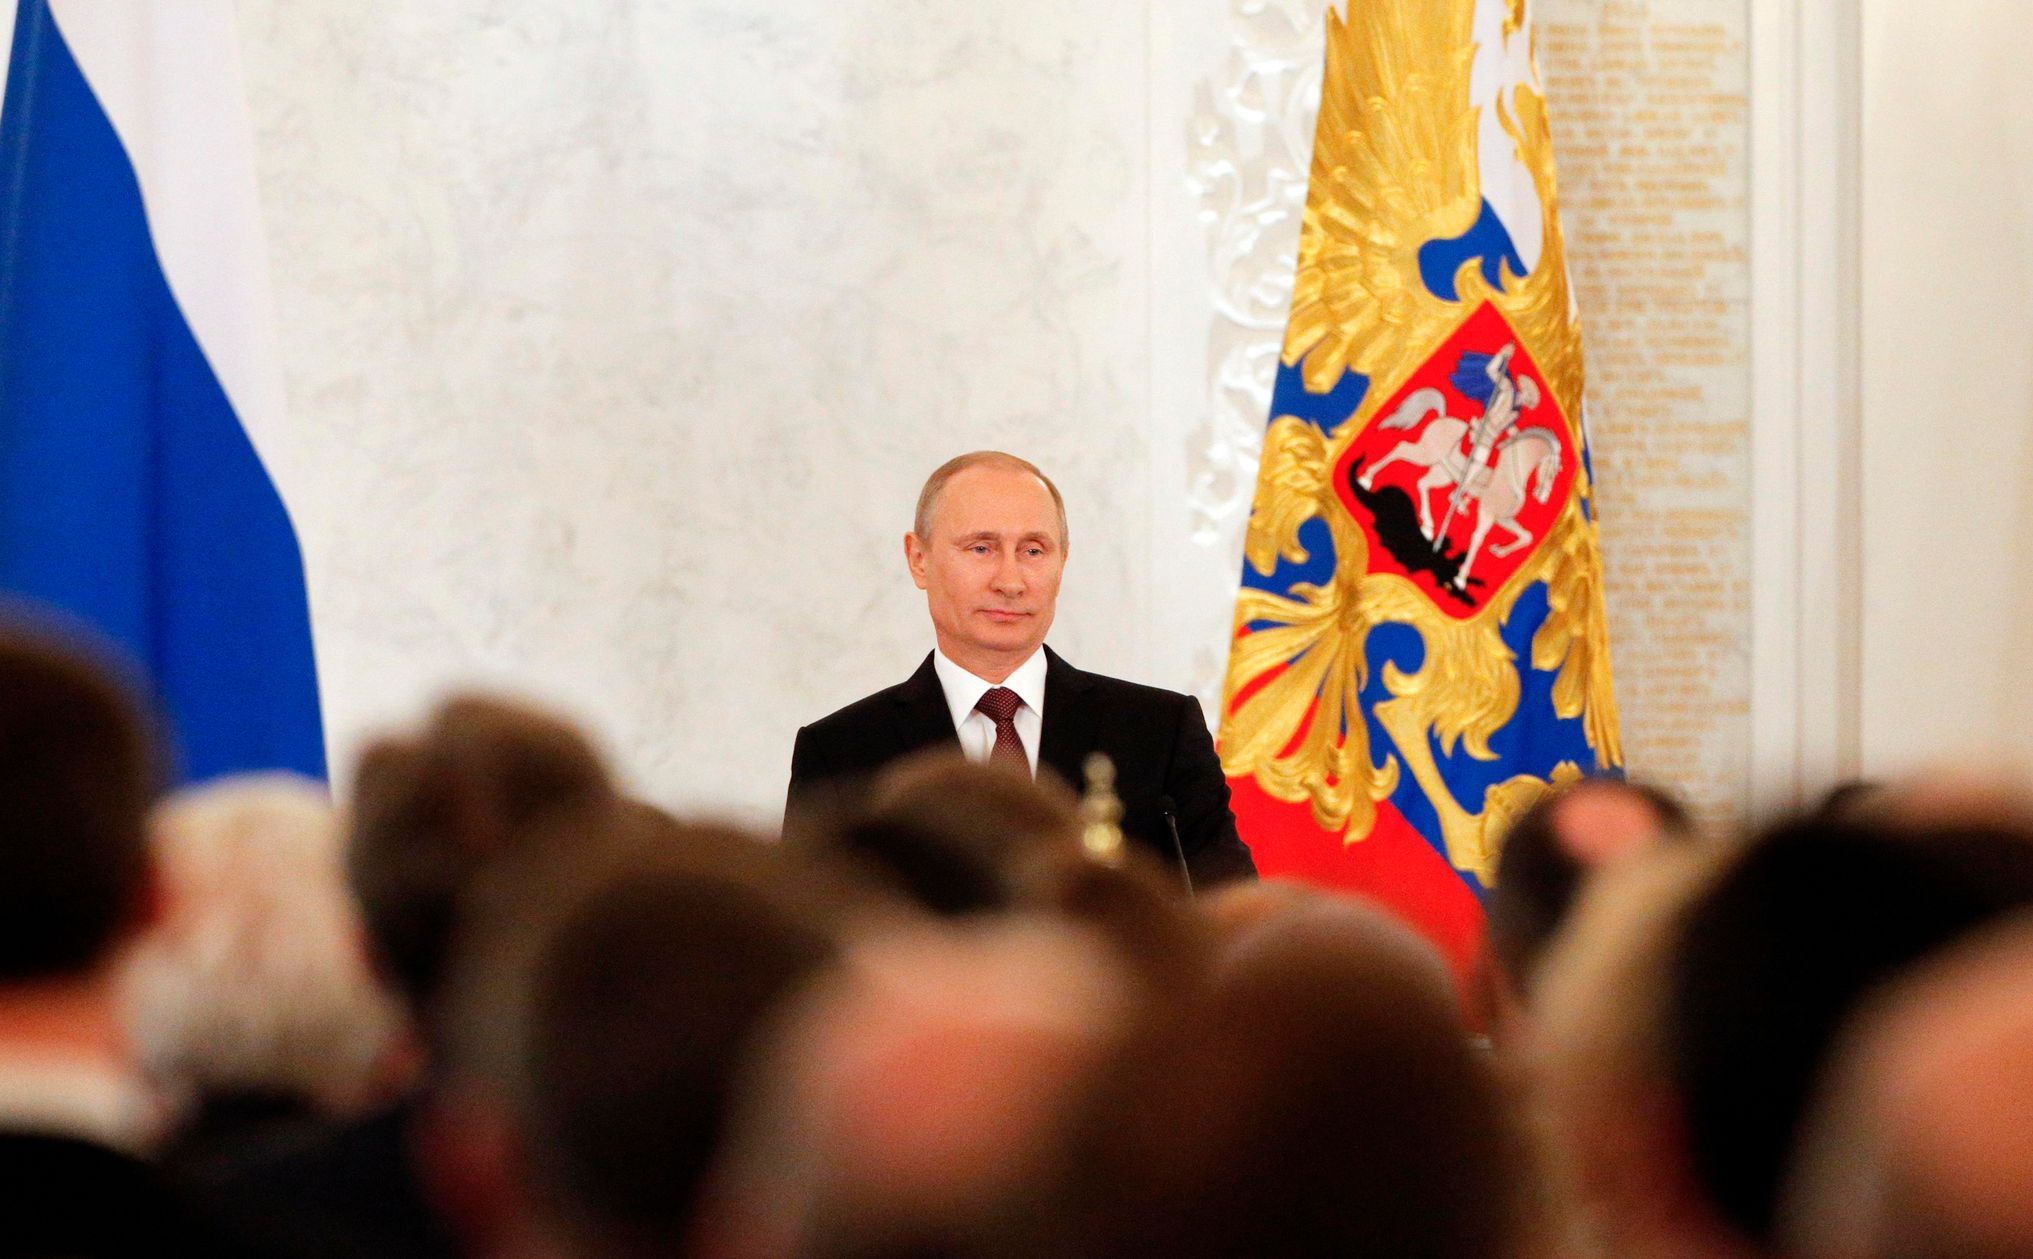 Vladimir Putin v Kremlu promlouvá k federálnímu shromážděn.